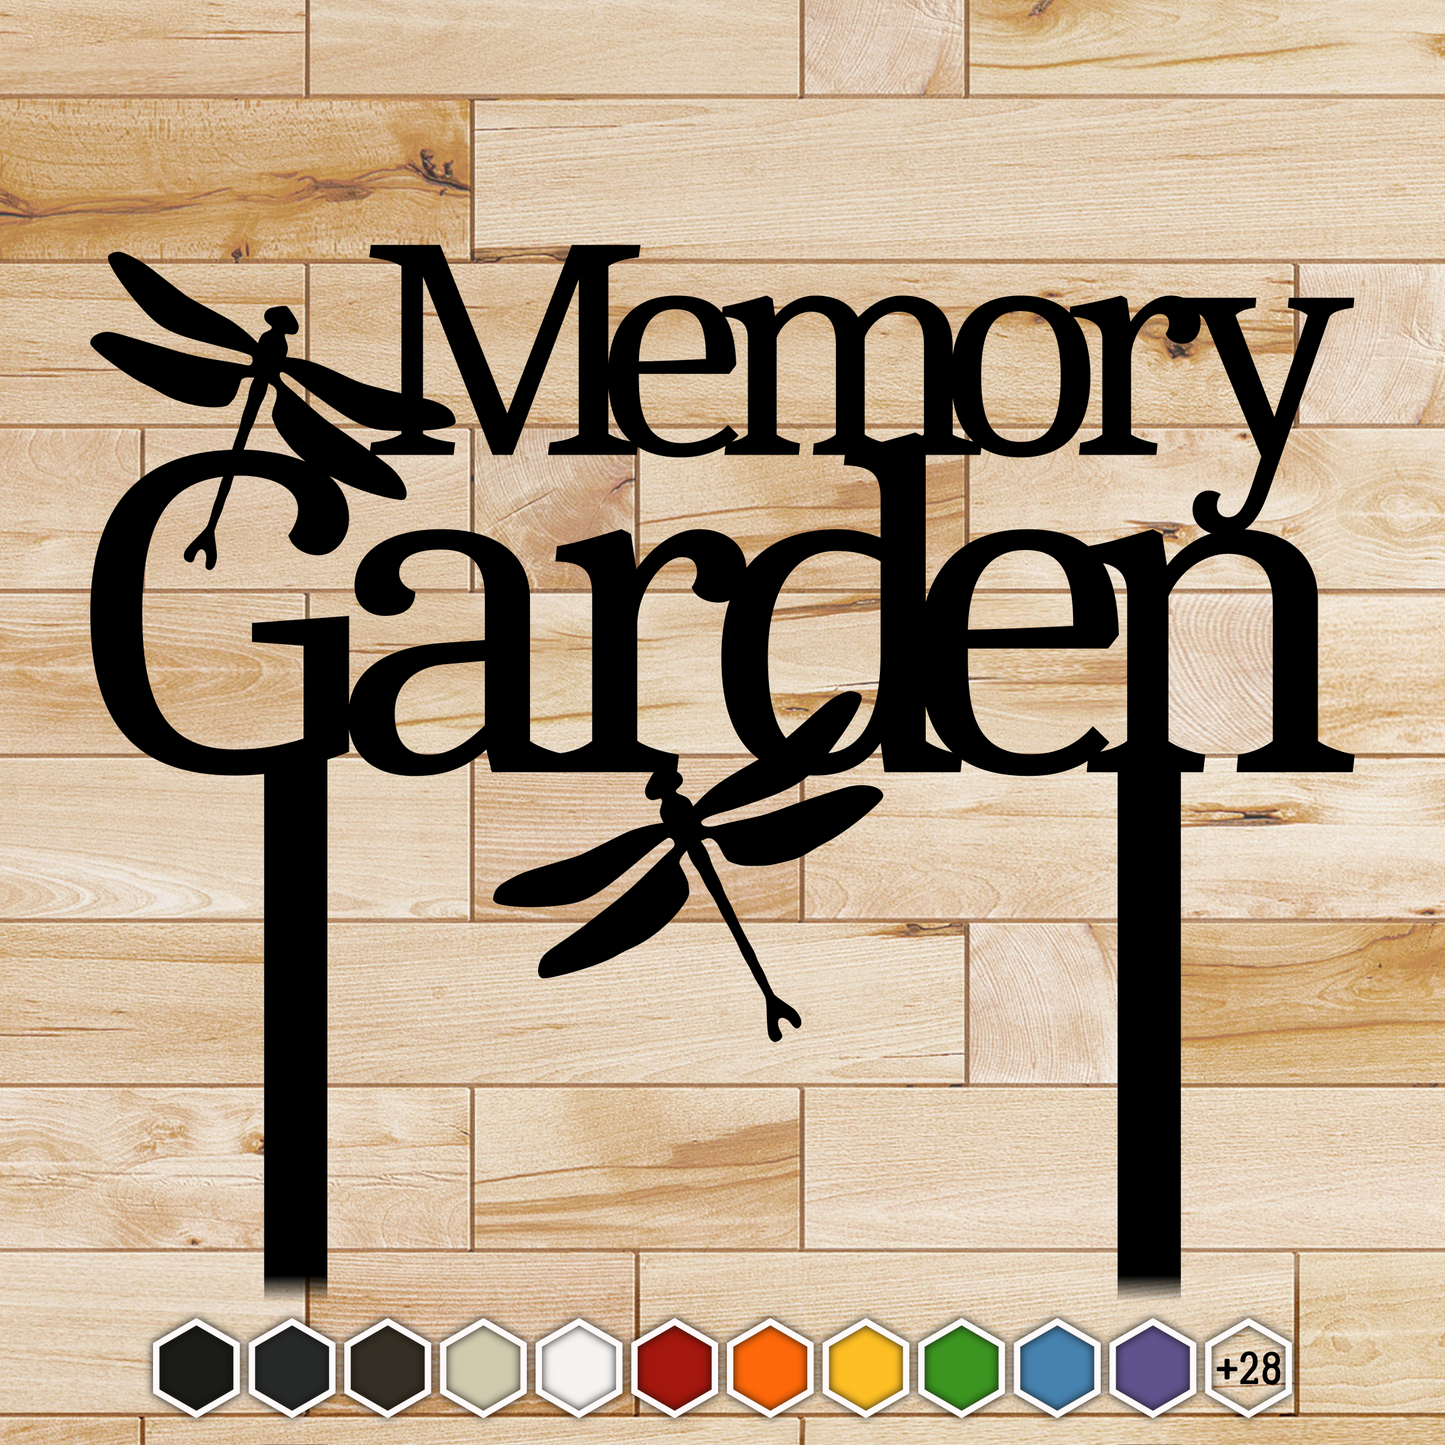 Memory Garden